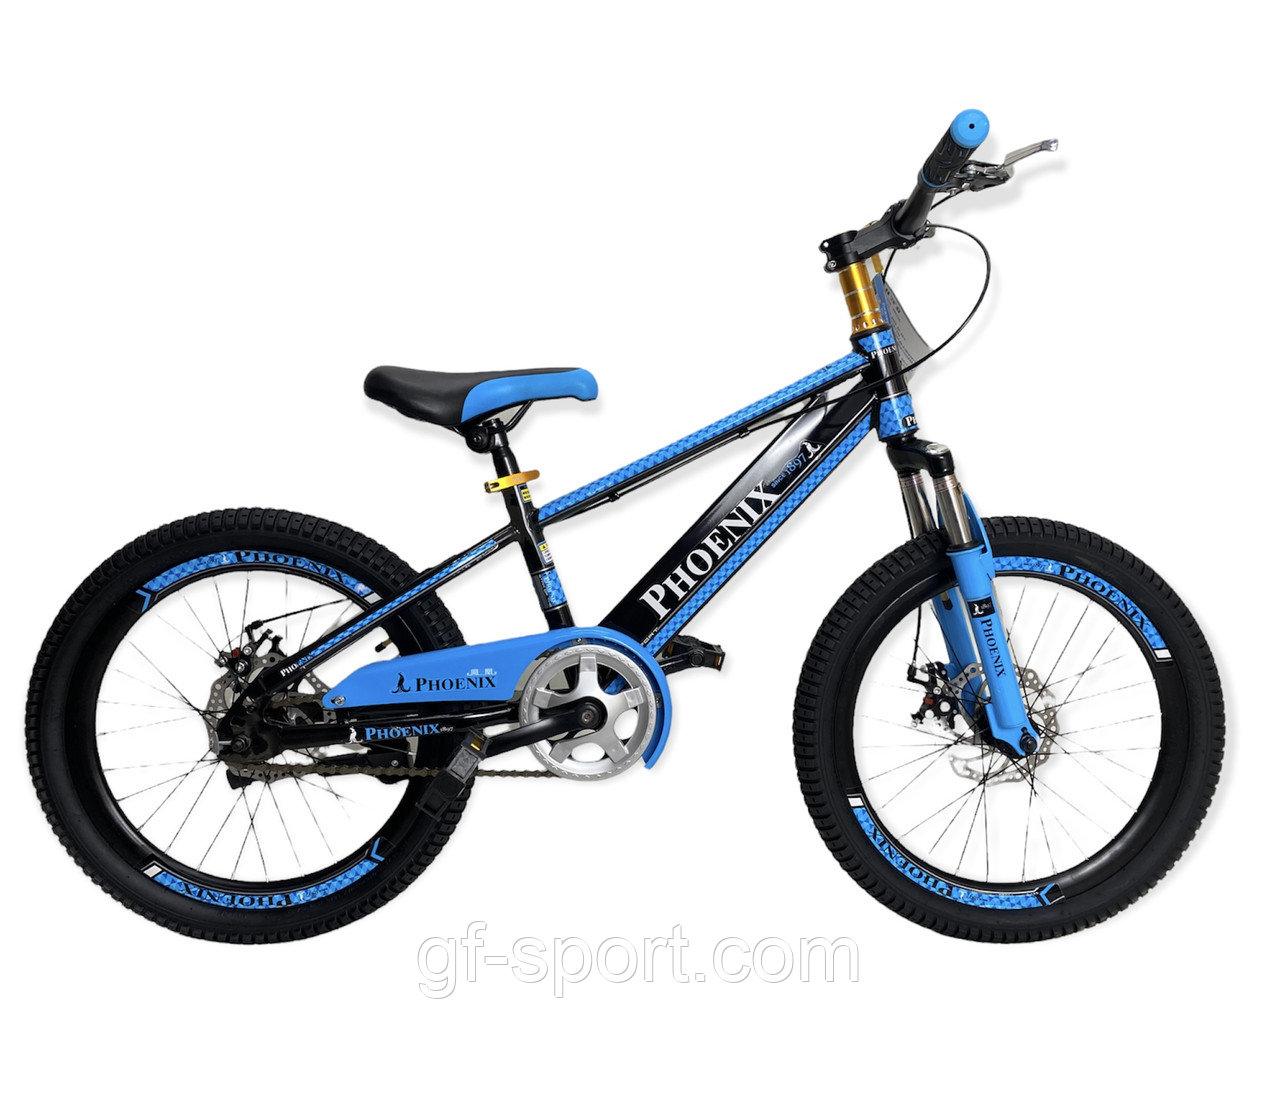 Велосипед Phoenix на дисковых тормозах синий оригинал детский с холостым ходом 20 размер (557-20)